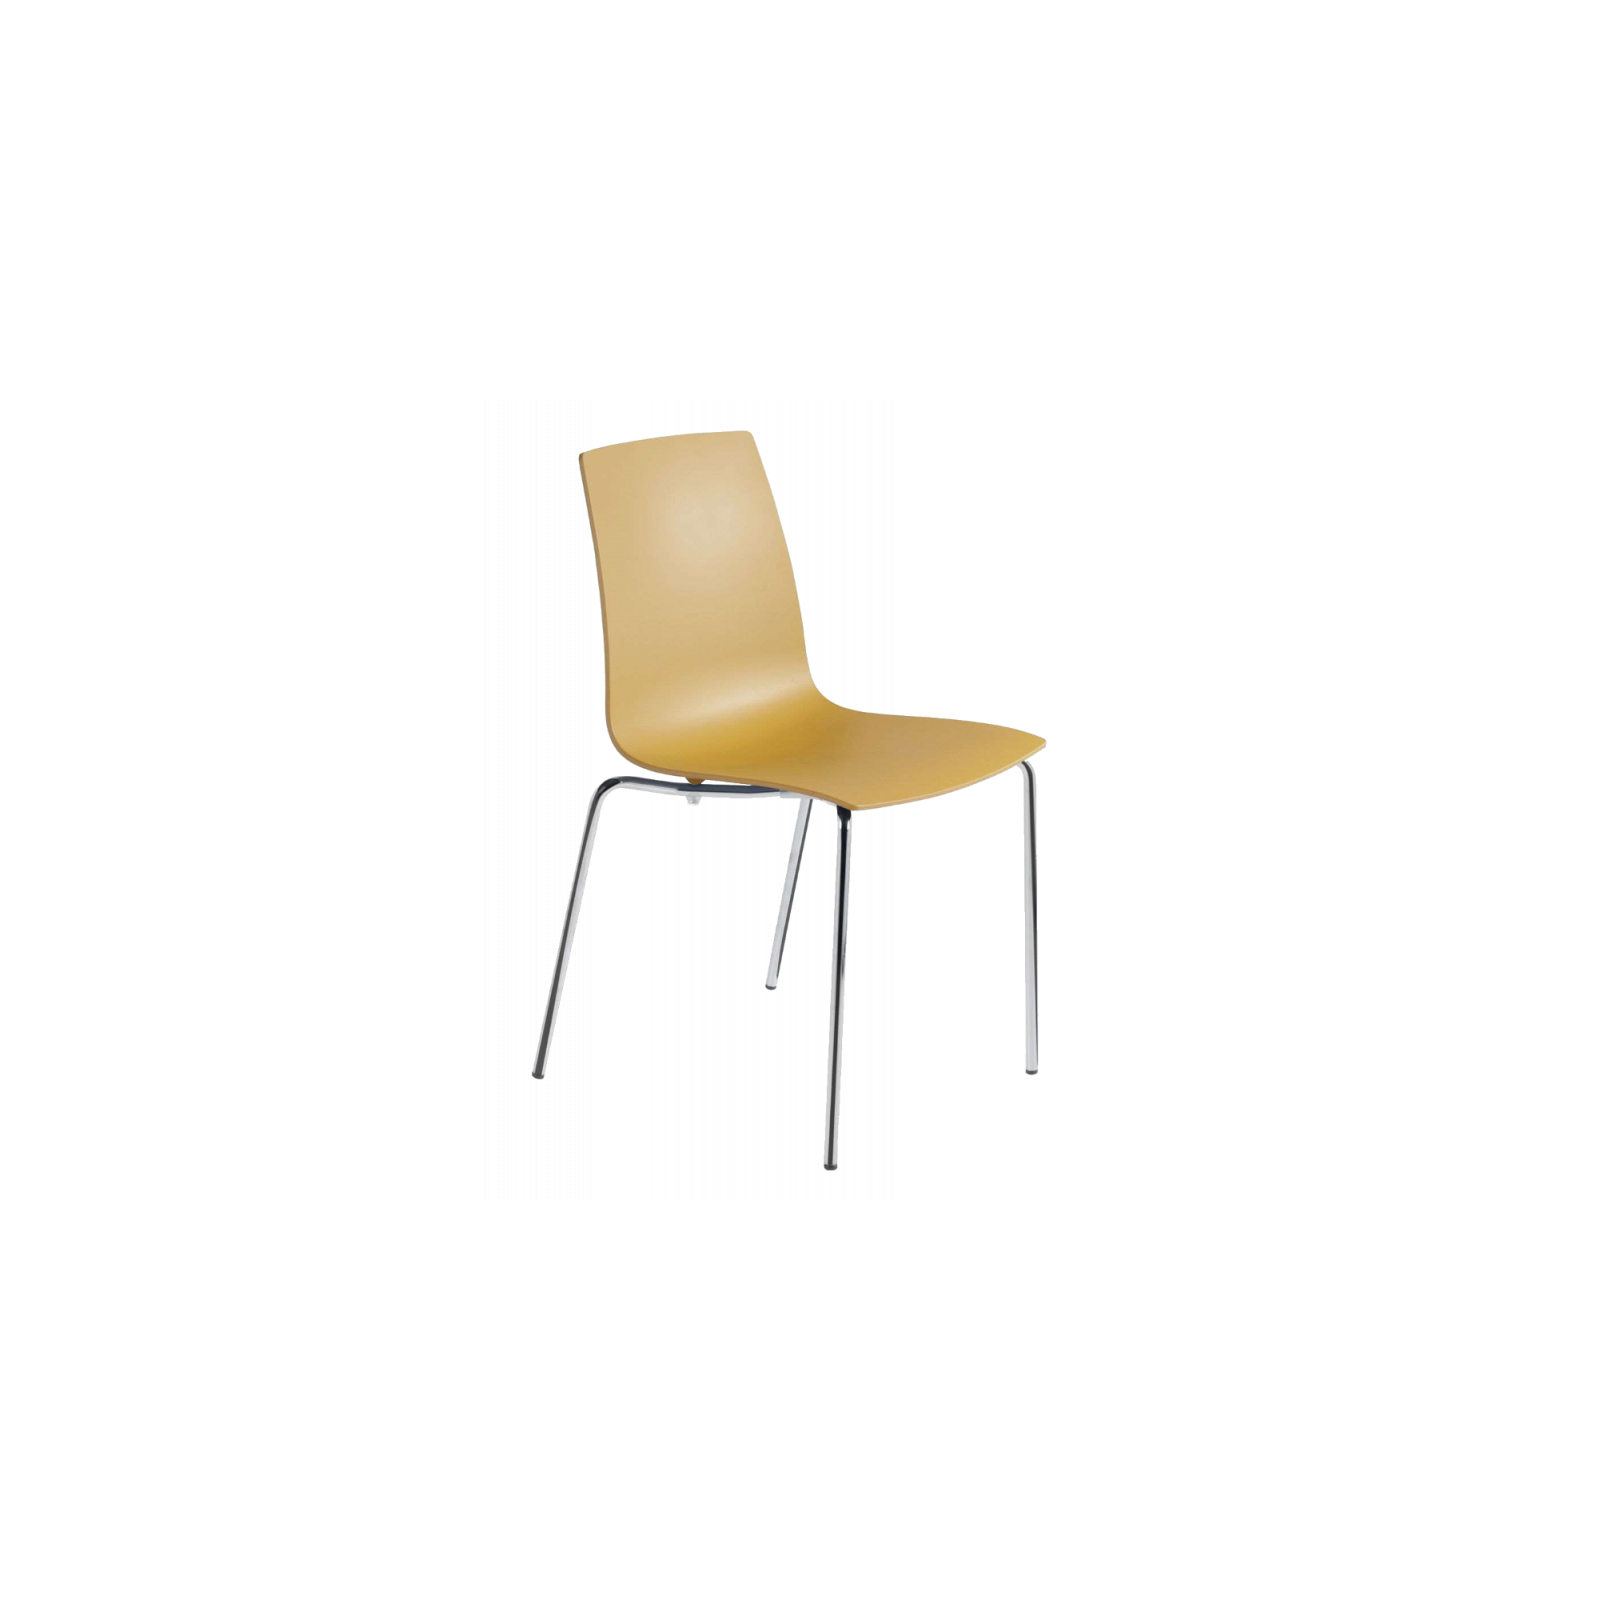 Кухонный стул PAPATYA x-treme-s, сиденье матовое желтое, ножки хромированные (2650)